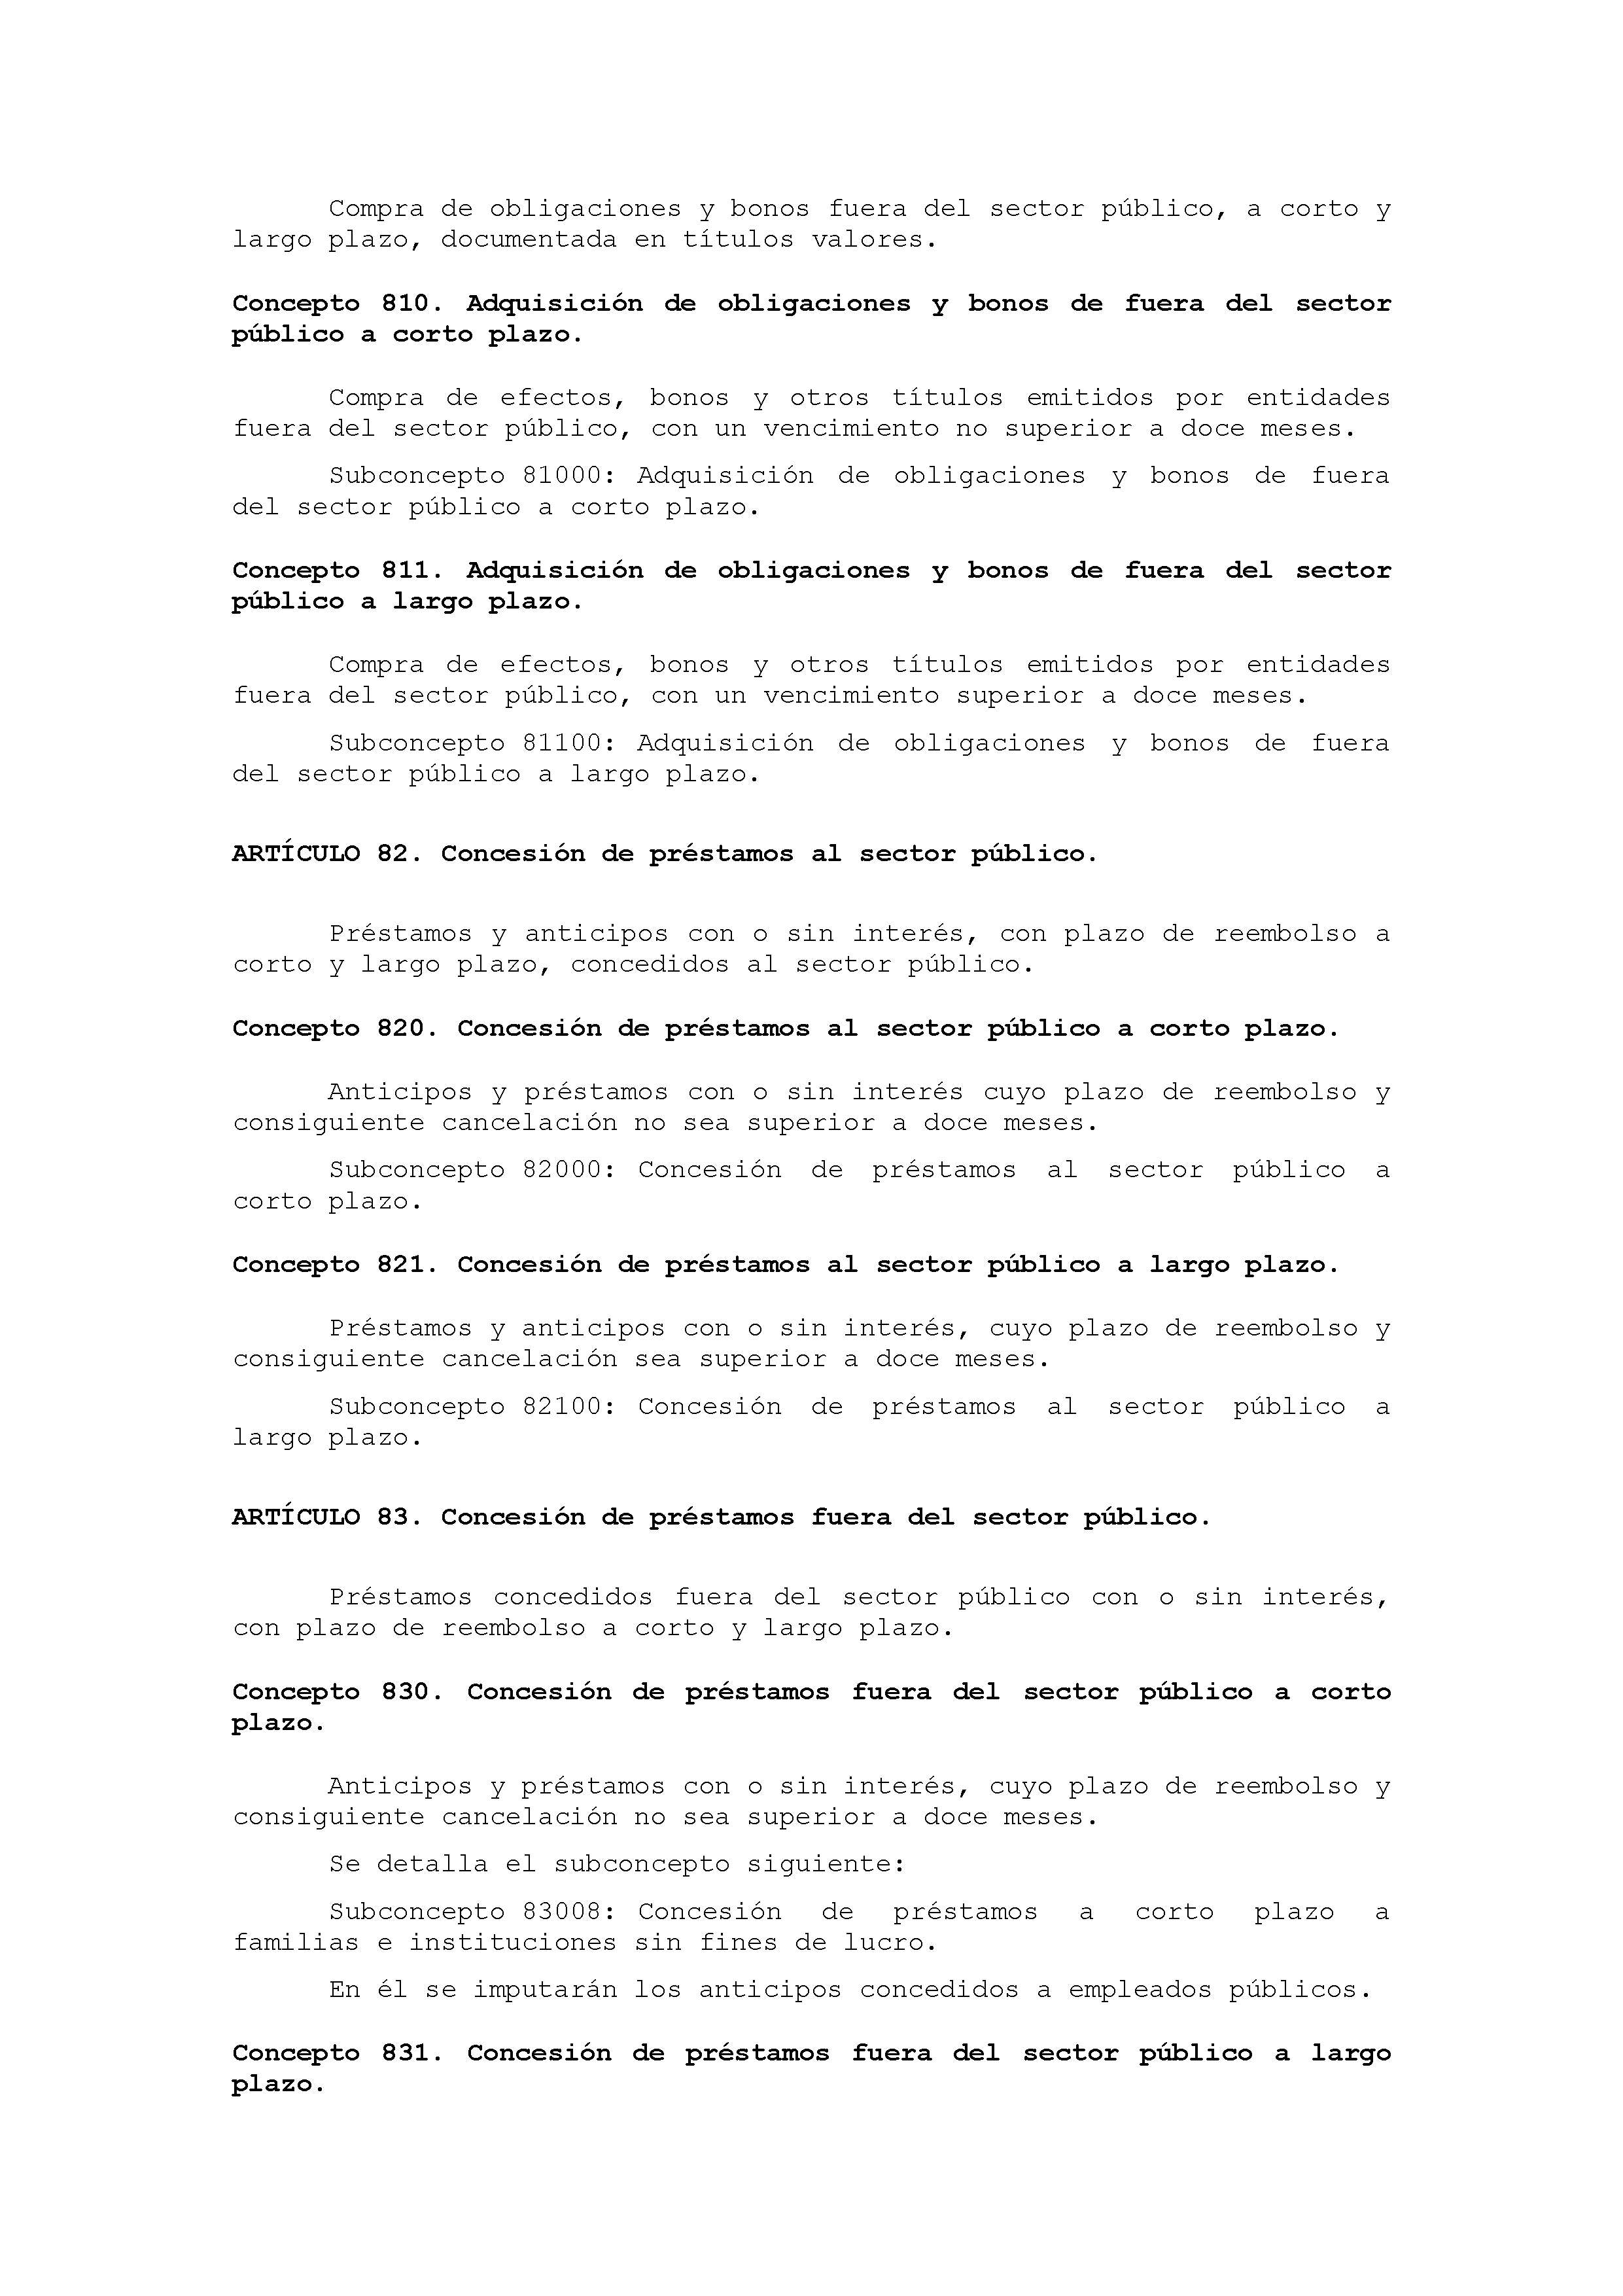 ANEXO IX CÓDIGO DE LA CLASIFICACIÓN ECONÓMICA DE LOS GASTOS PÚBLICOS Pag 44